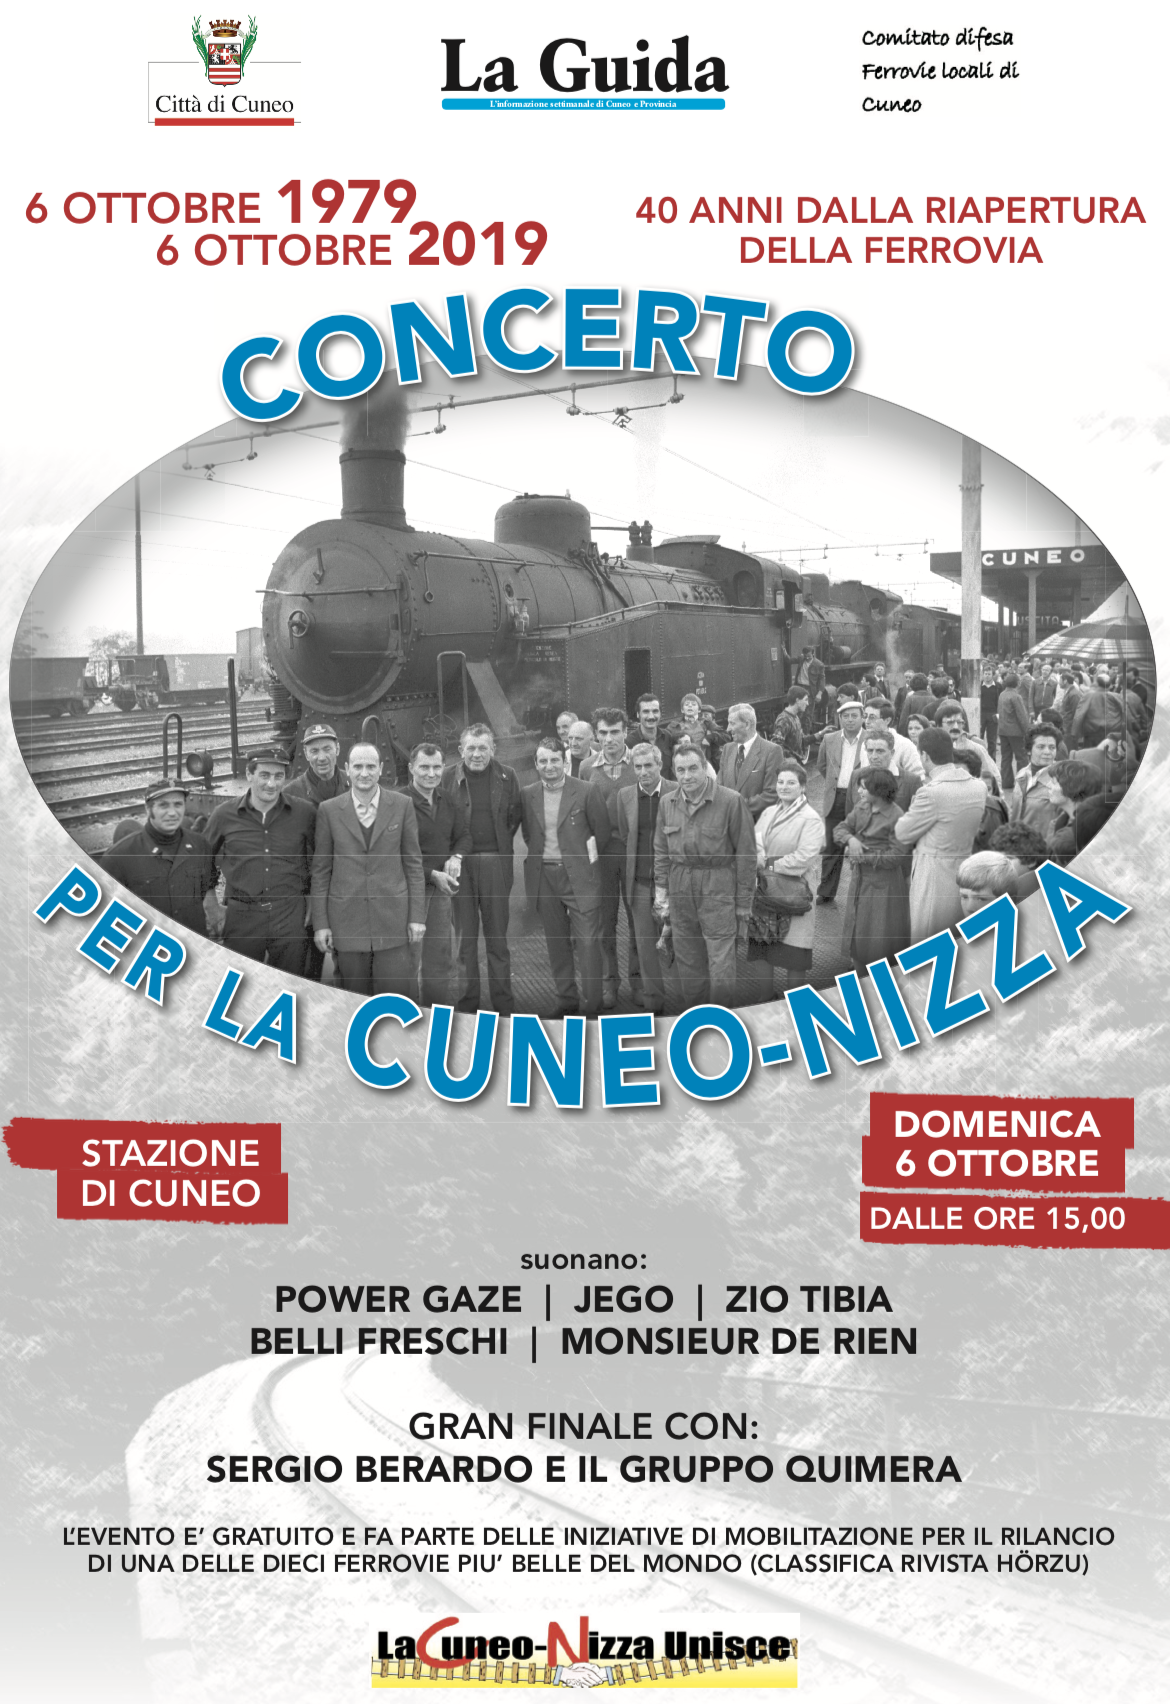 Concerto per la Cuneo-Nizza